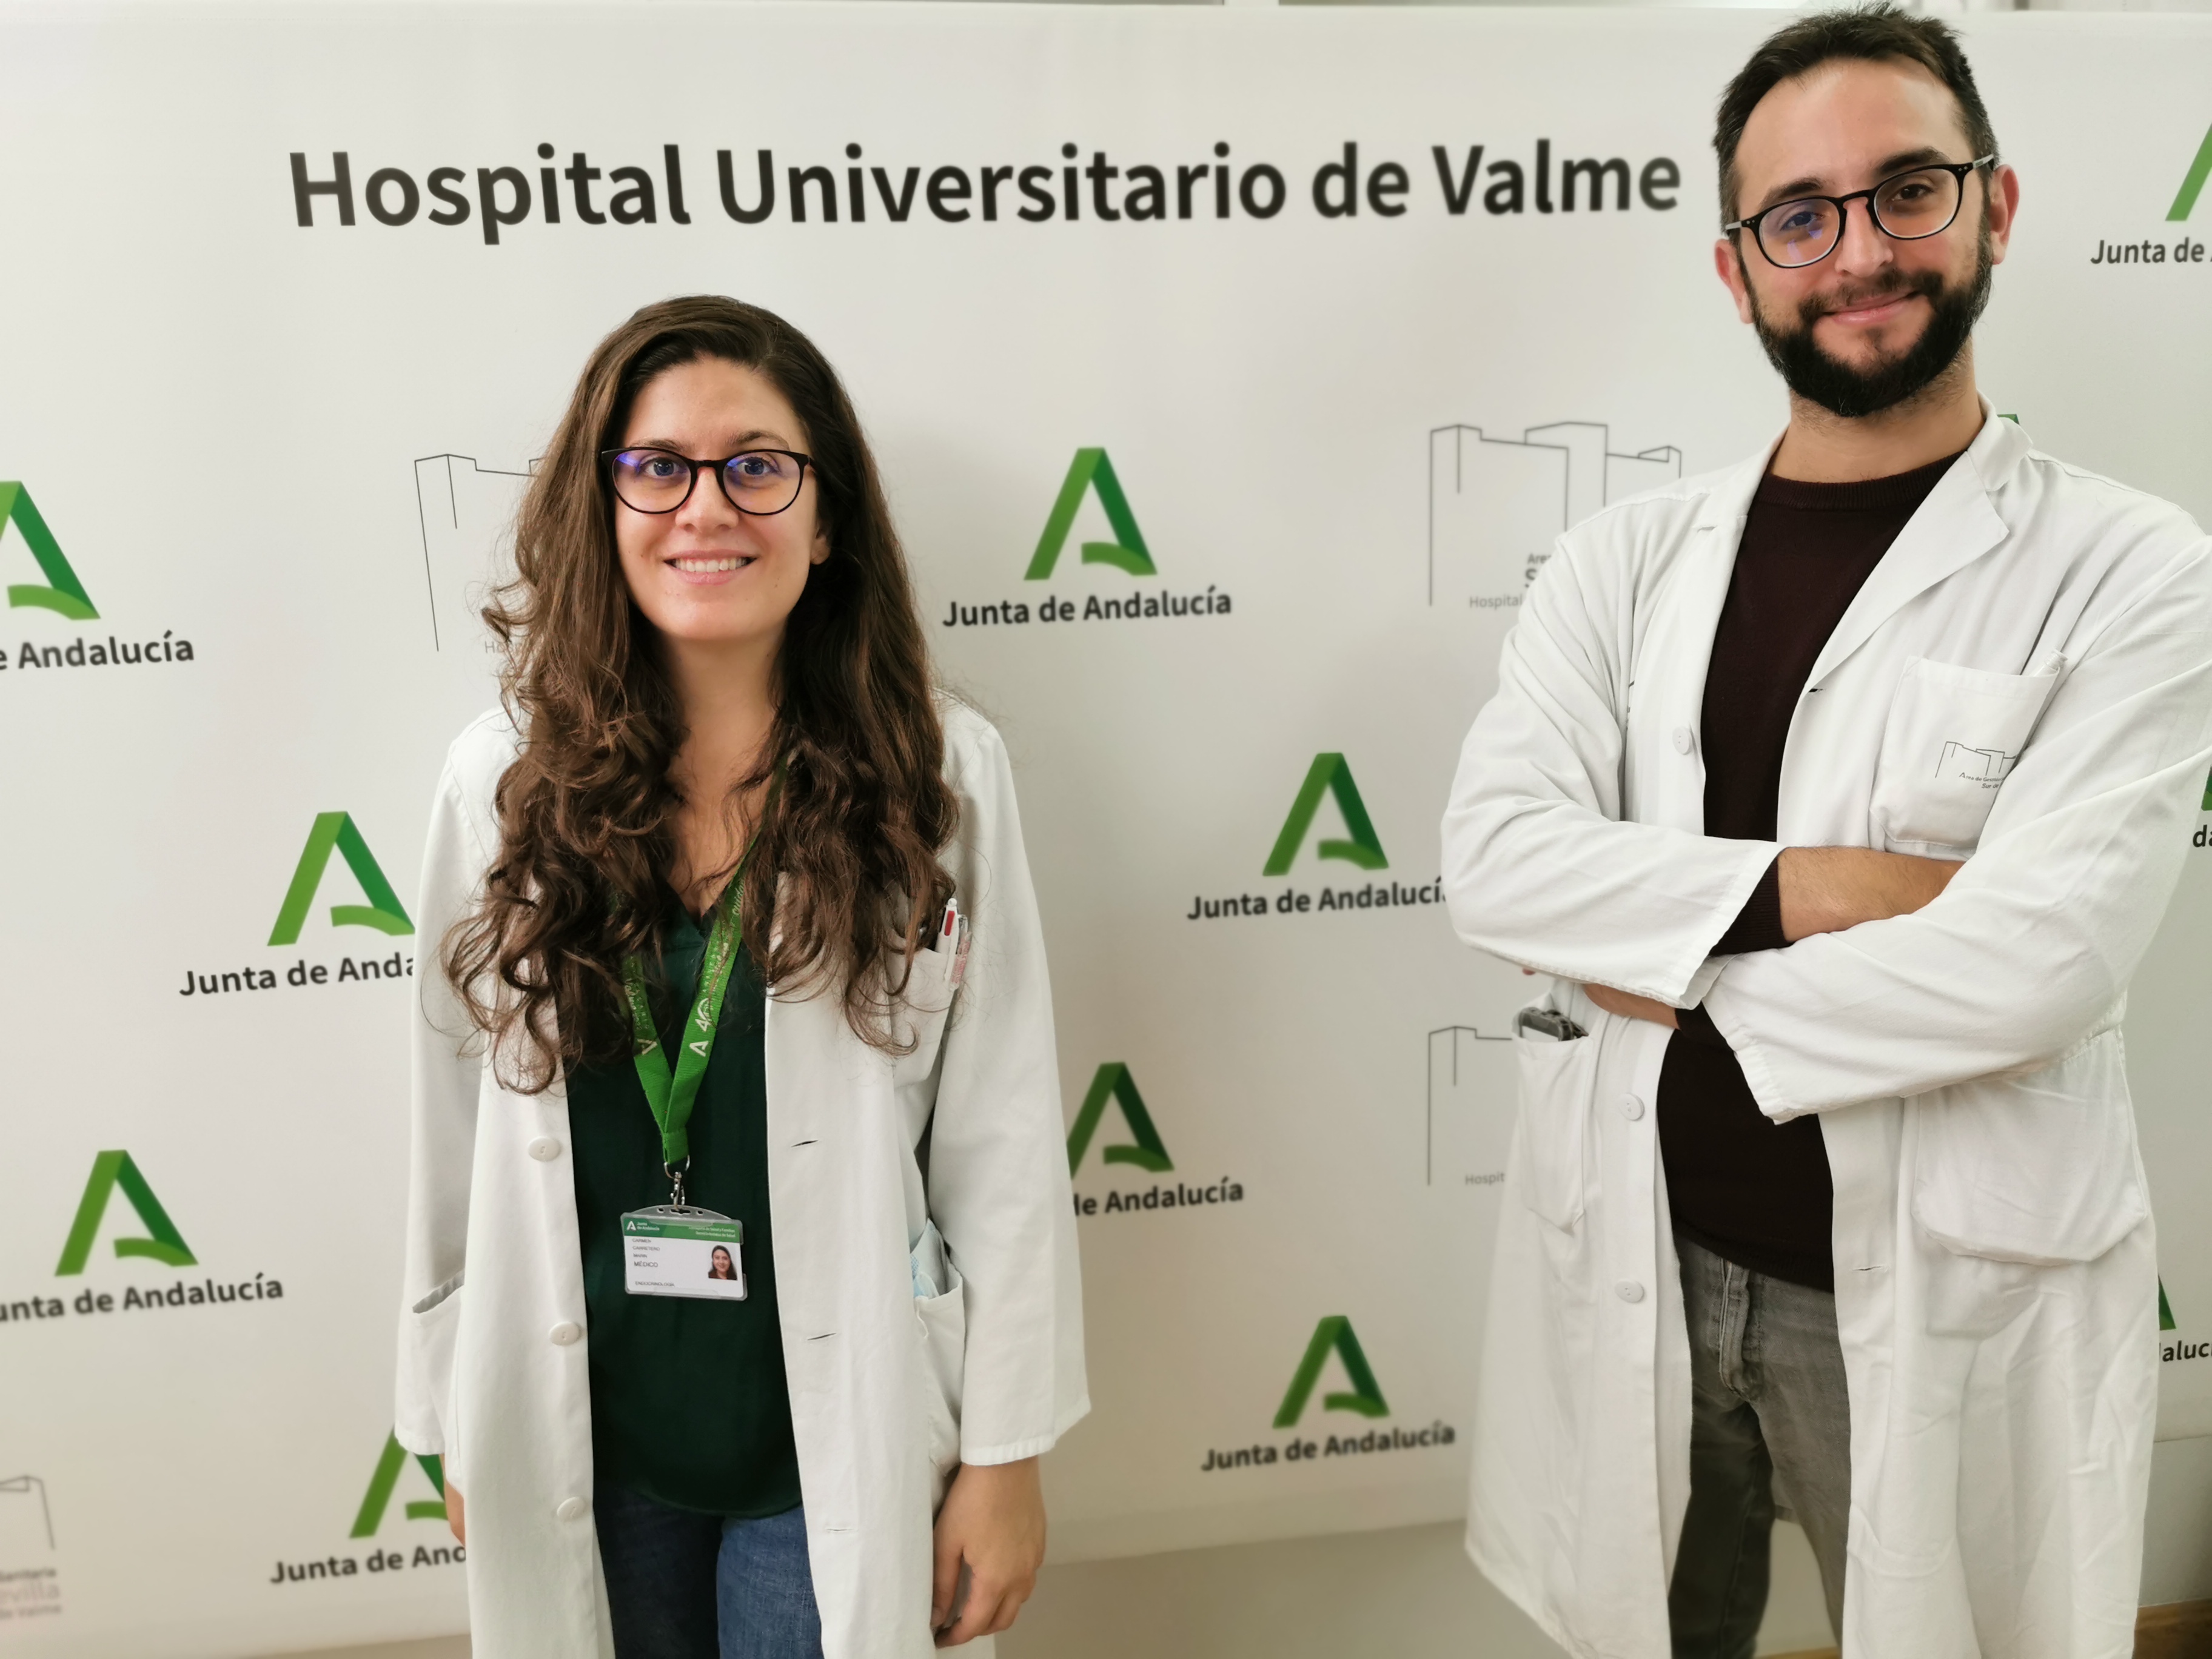 El Hospital de Valme optimiza la calidad de vida de personas jóvenes con diabetes conjuntando la formación y el manejo psicológico de la enfermedad